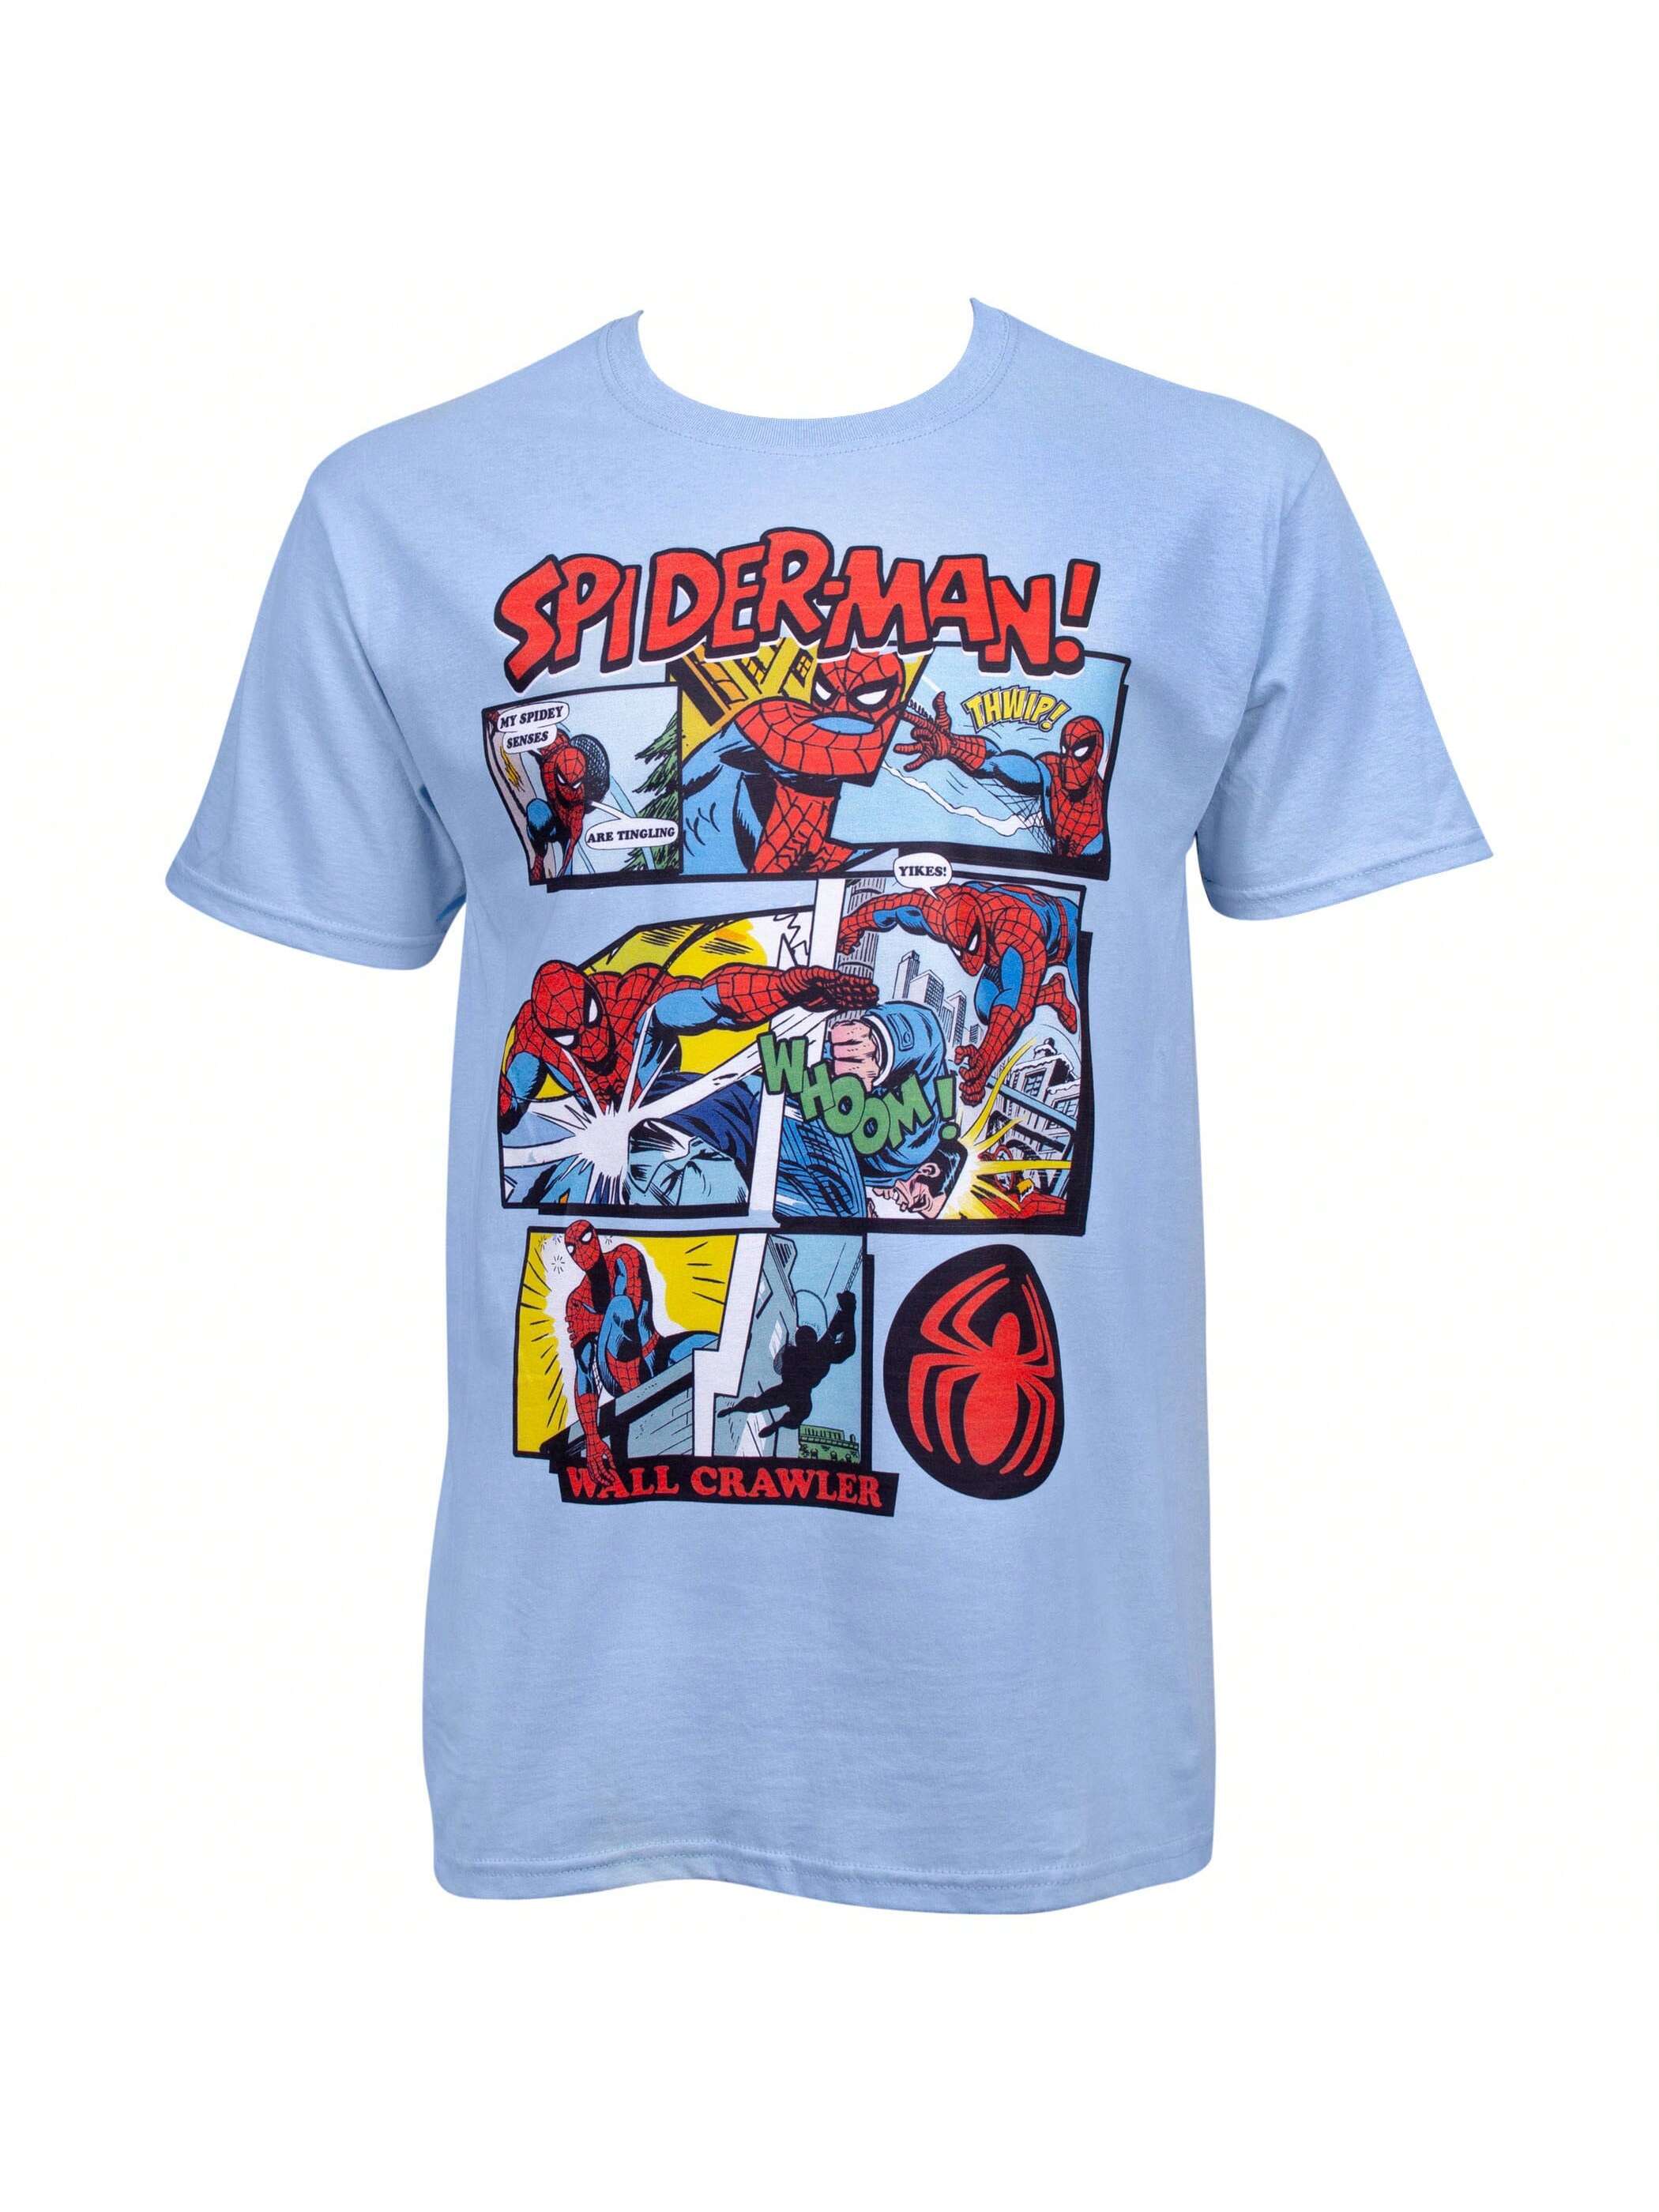 Синяя футболка с панелями комиксов Marvel Spider-Man, синий abystyle кружка 3d с крышкой marvel spider man